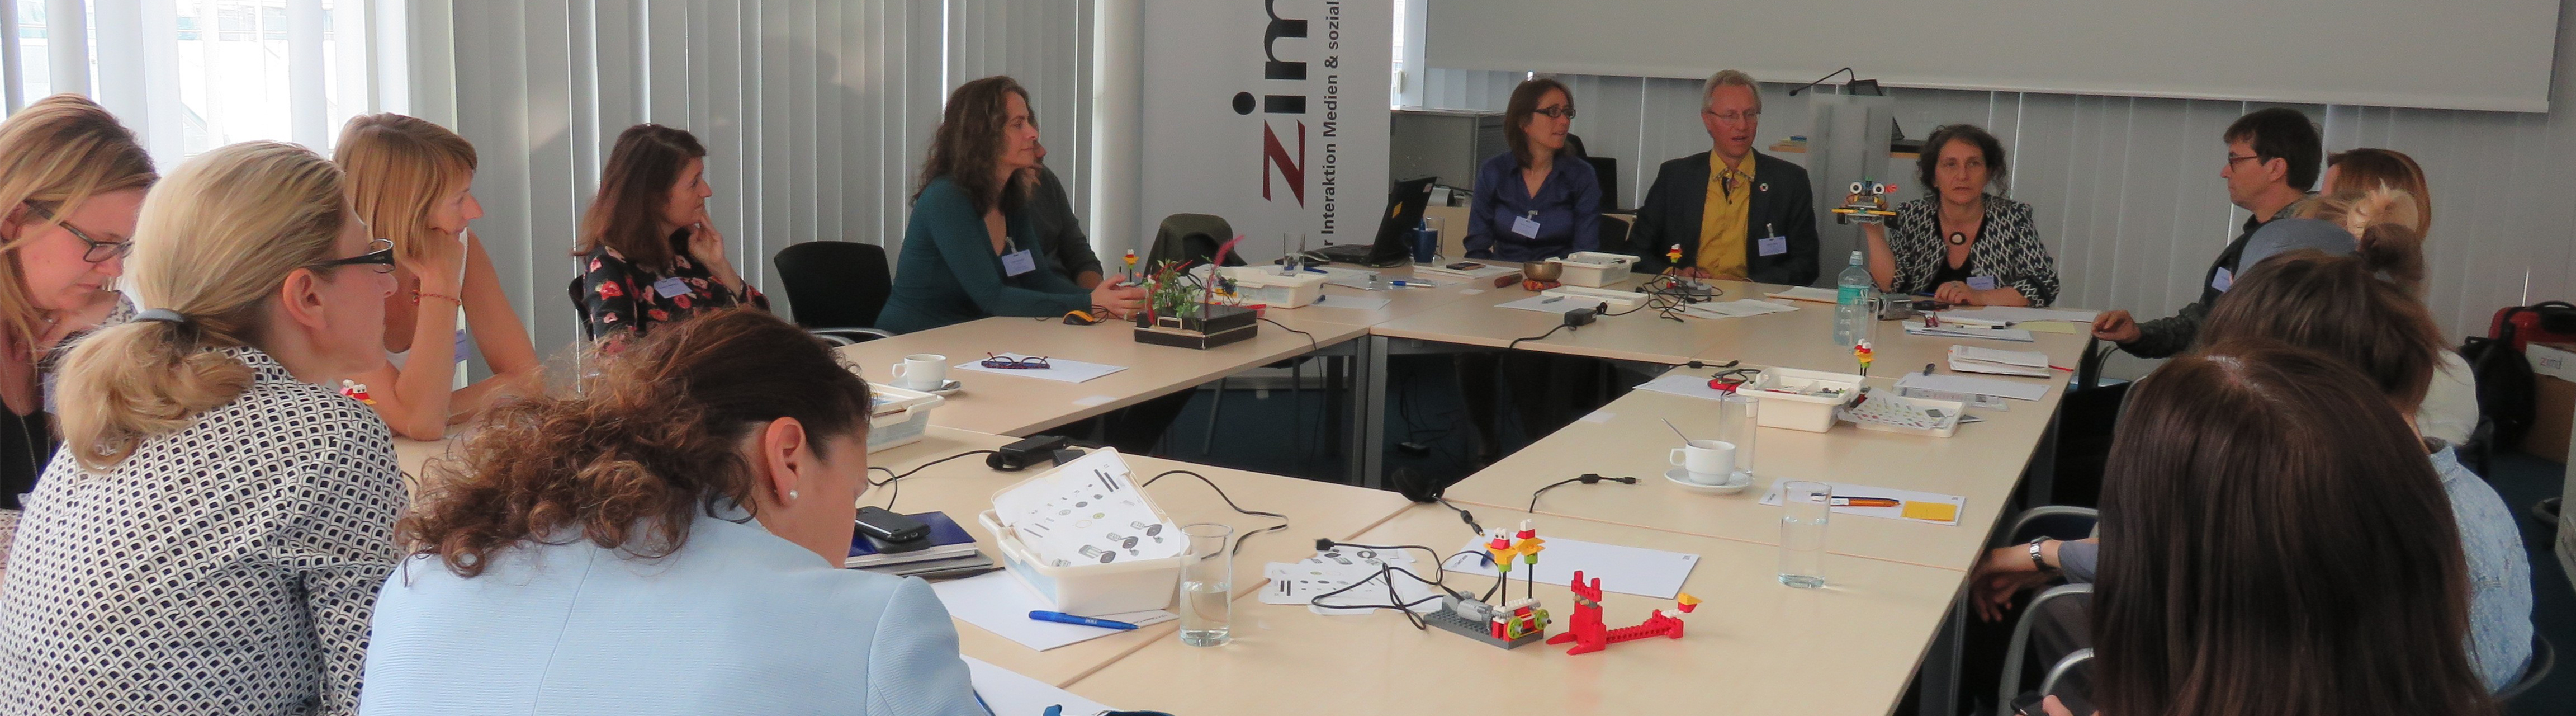 Dorothea Erharter und TeilnehmerInnen des Innovationslabor Gender & Technik sitzen an einem großen Tisch zusammen, ZIMD